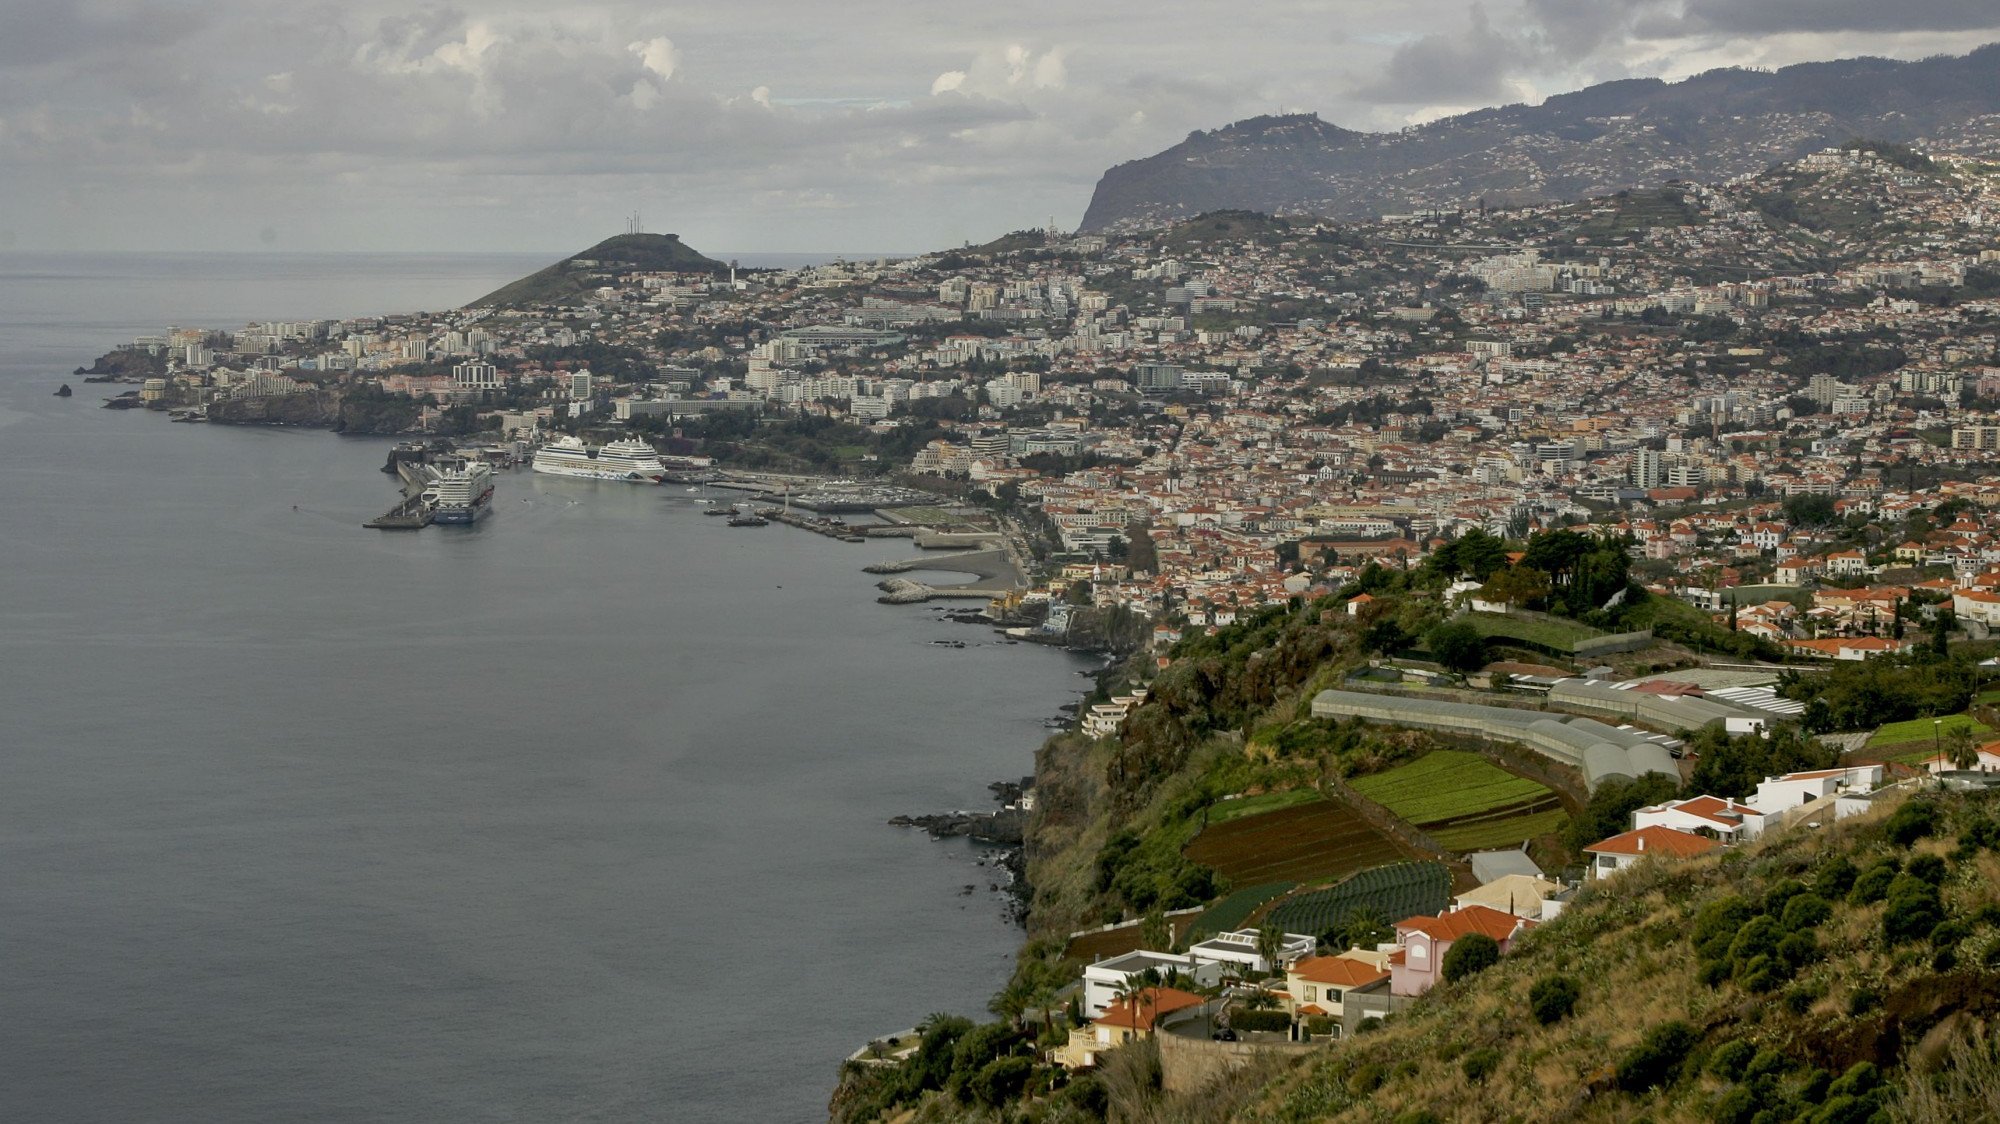 Depois de cinco anos encerrado para trabalhos de requalificação, no valor de 1,7 milhões de euros, o Museu de Fotografia da Madeira -- Atelier Vicente's, reabriu em julho do ano passado